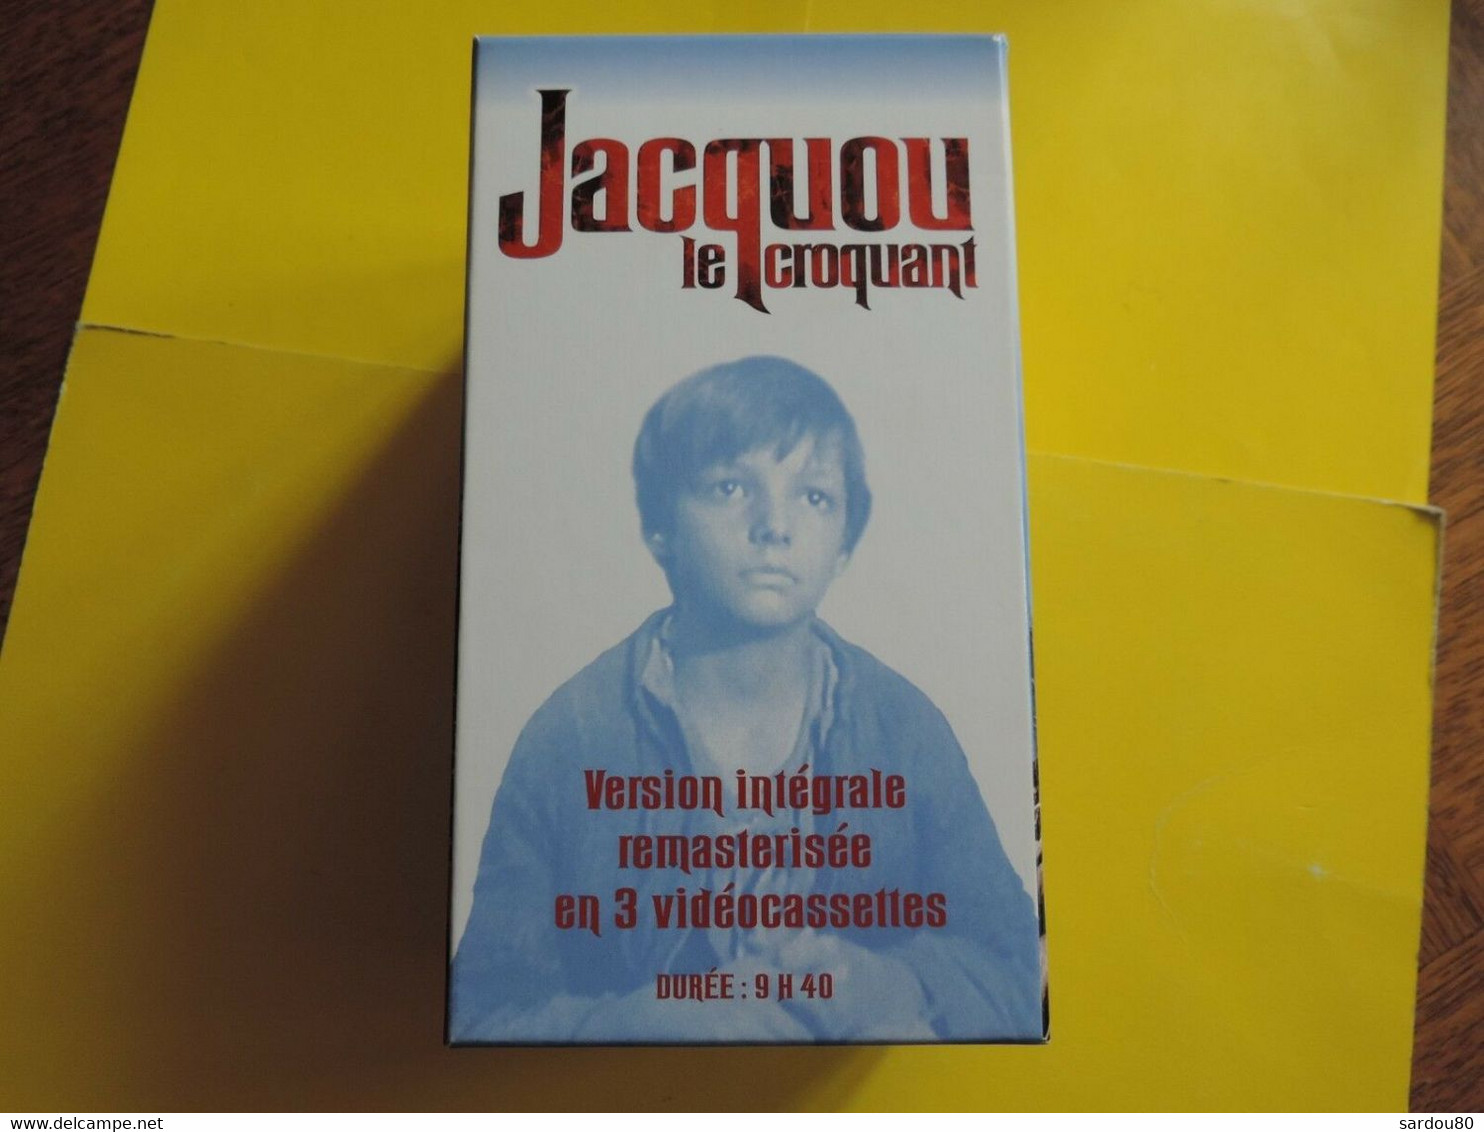 Jacquou Le Croquant Coffret 3 Cassettes - Action, Aventure